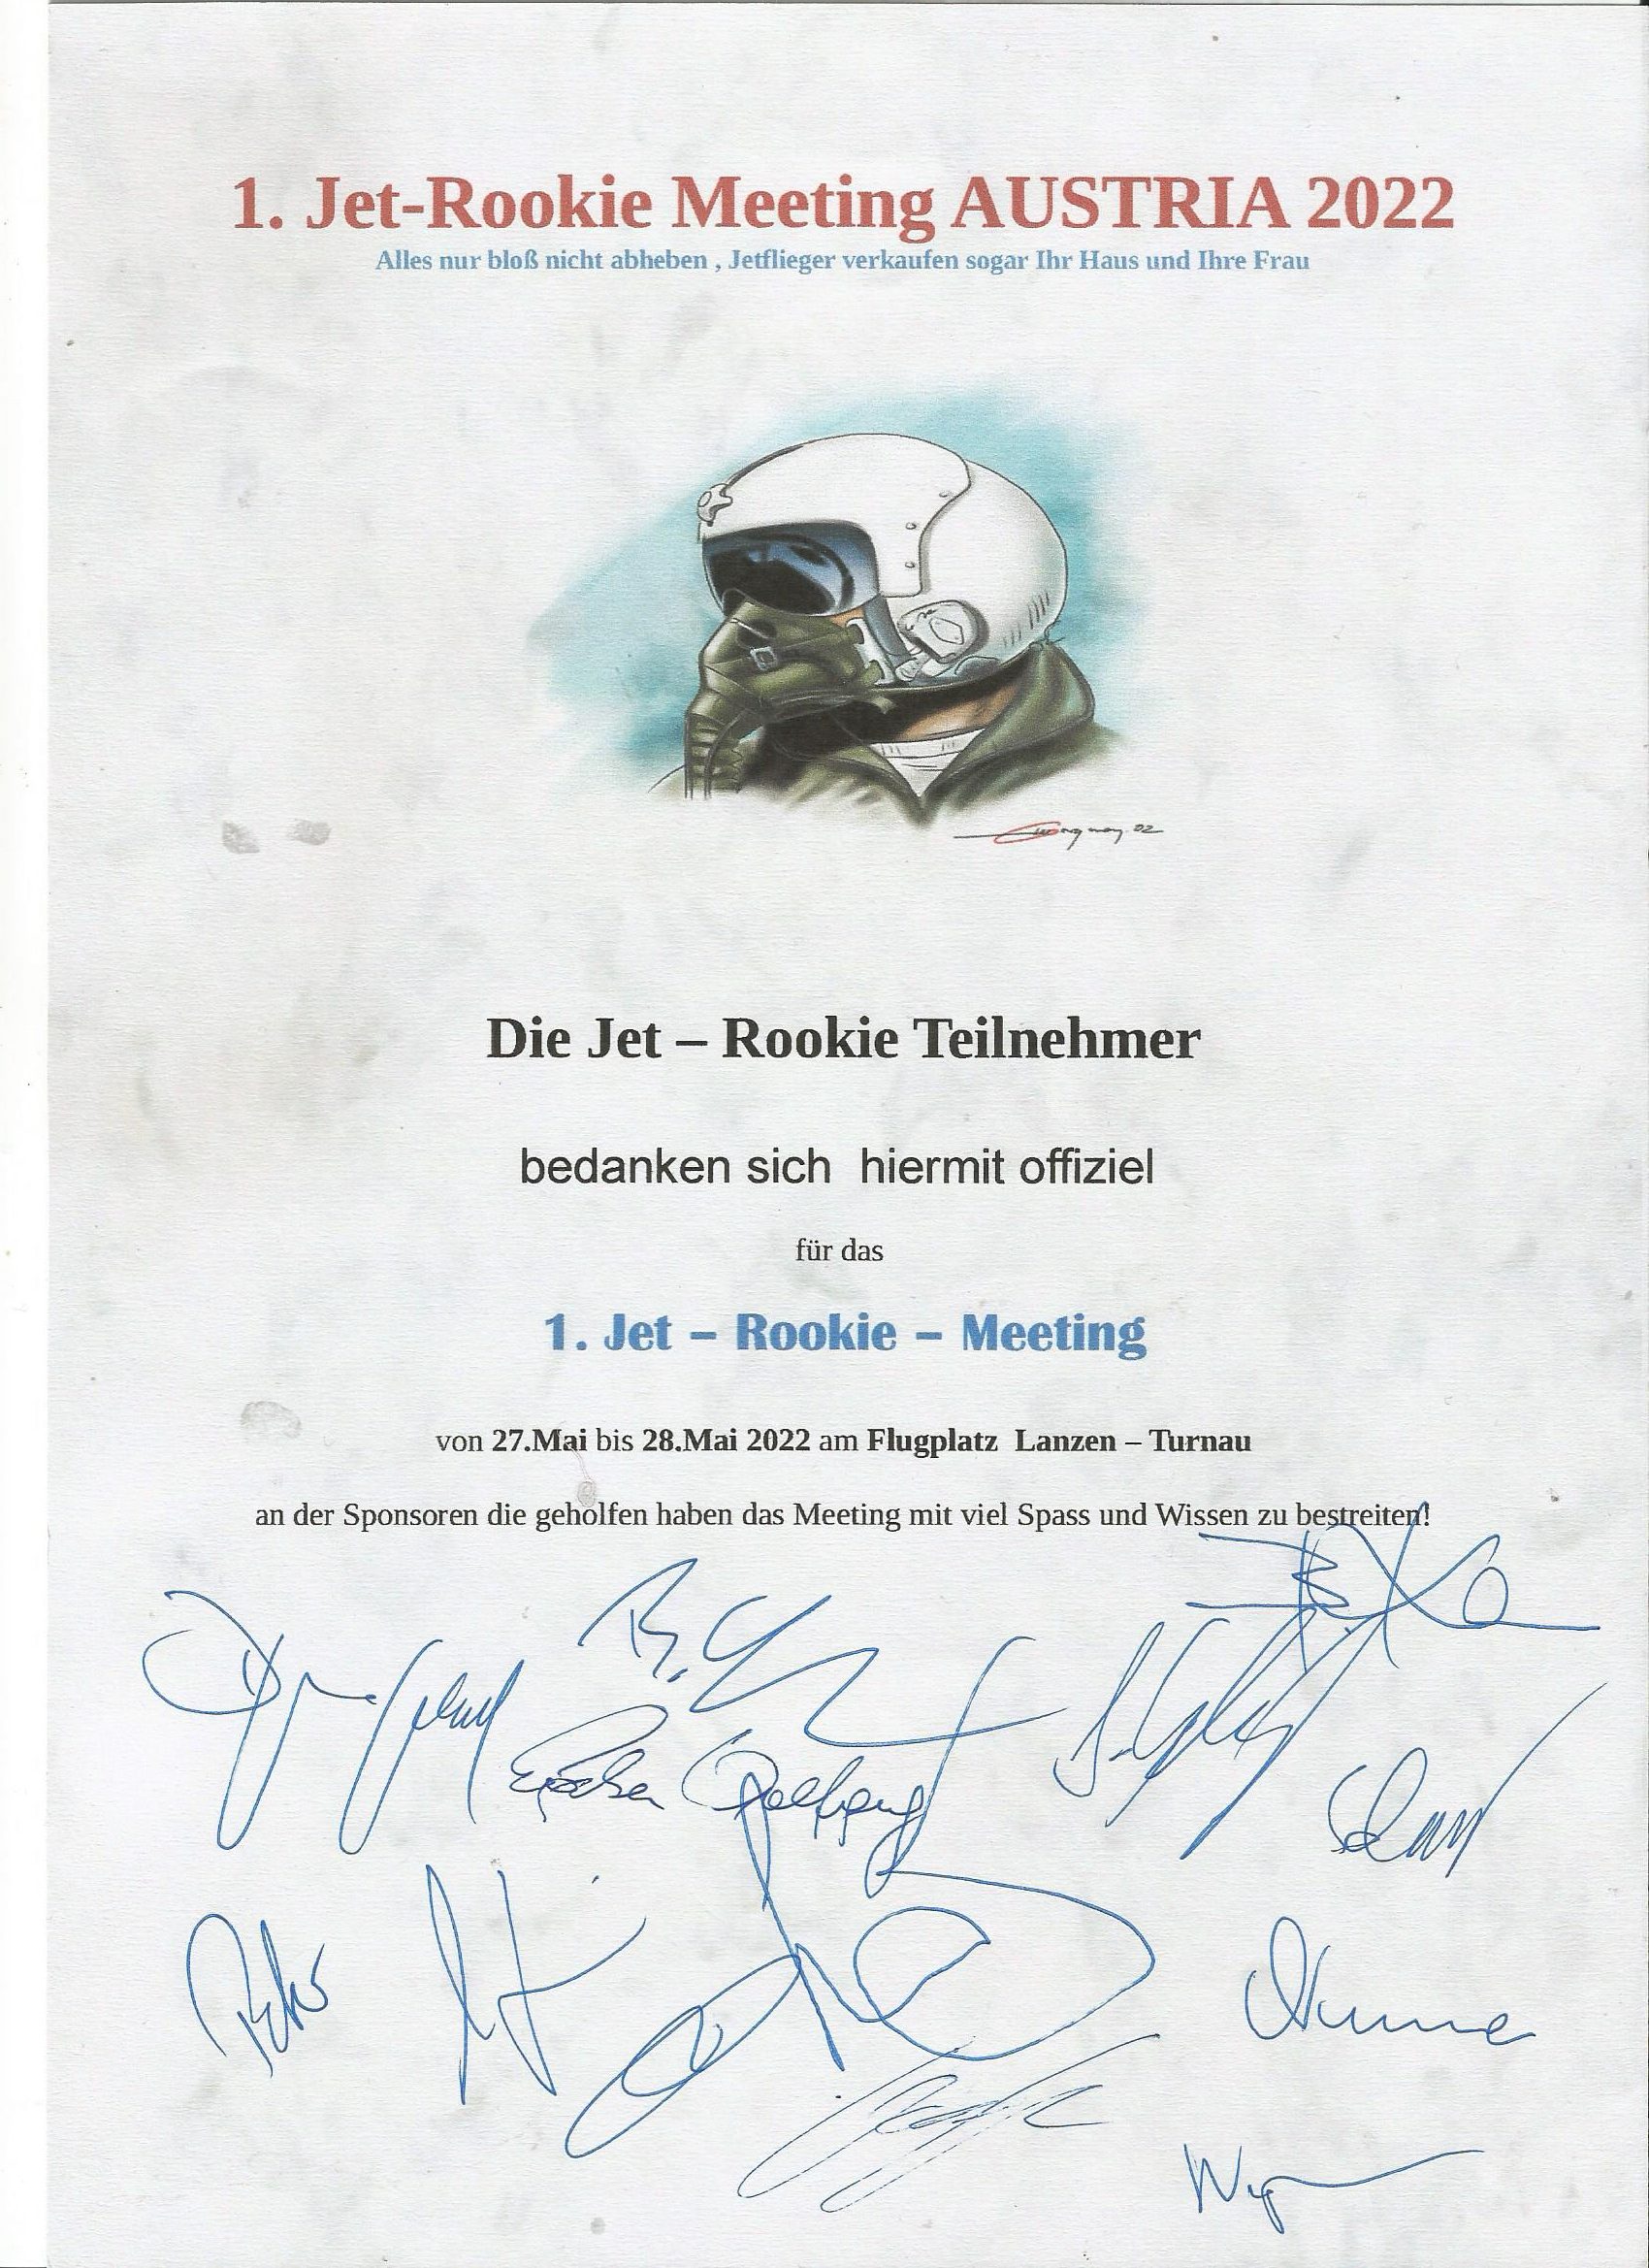 1. Jet Rookie Meeting 2022